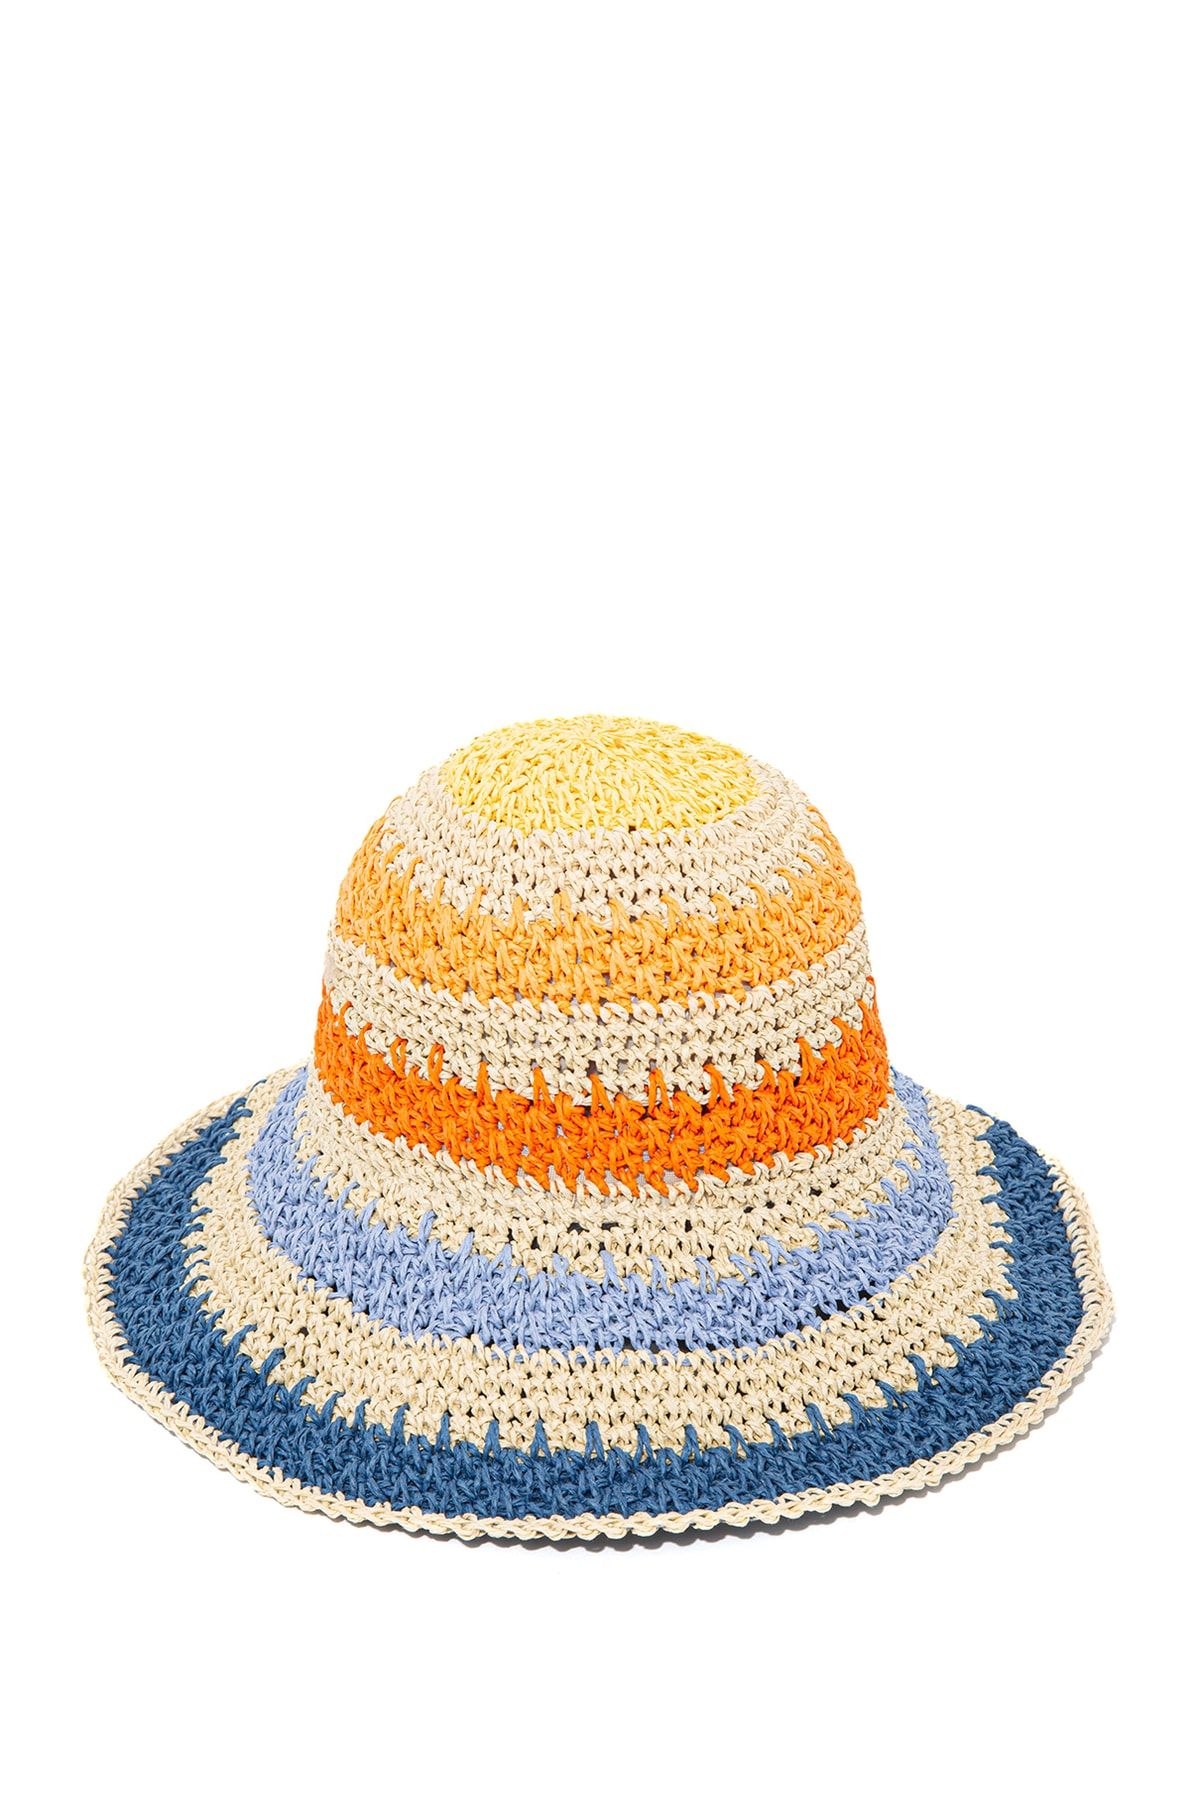 Mavi Renkli Hasır Şapka 1911285-82676